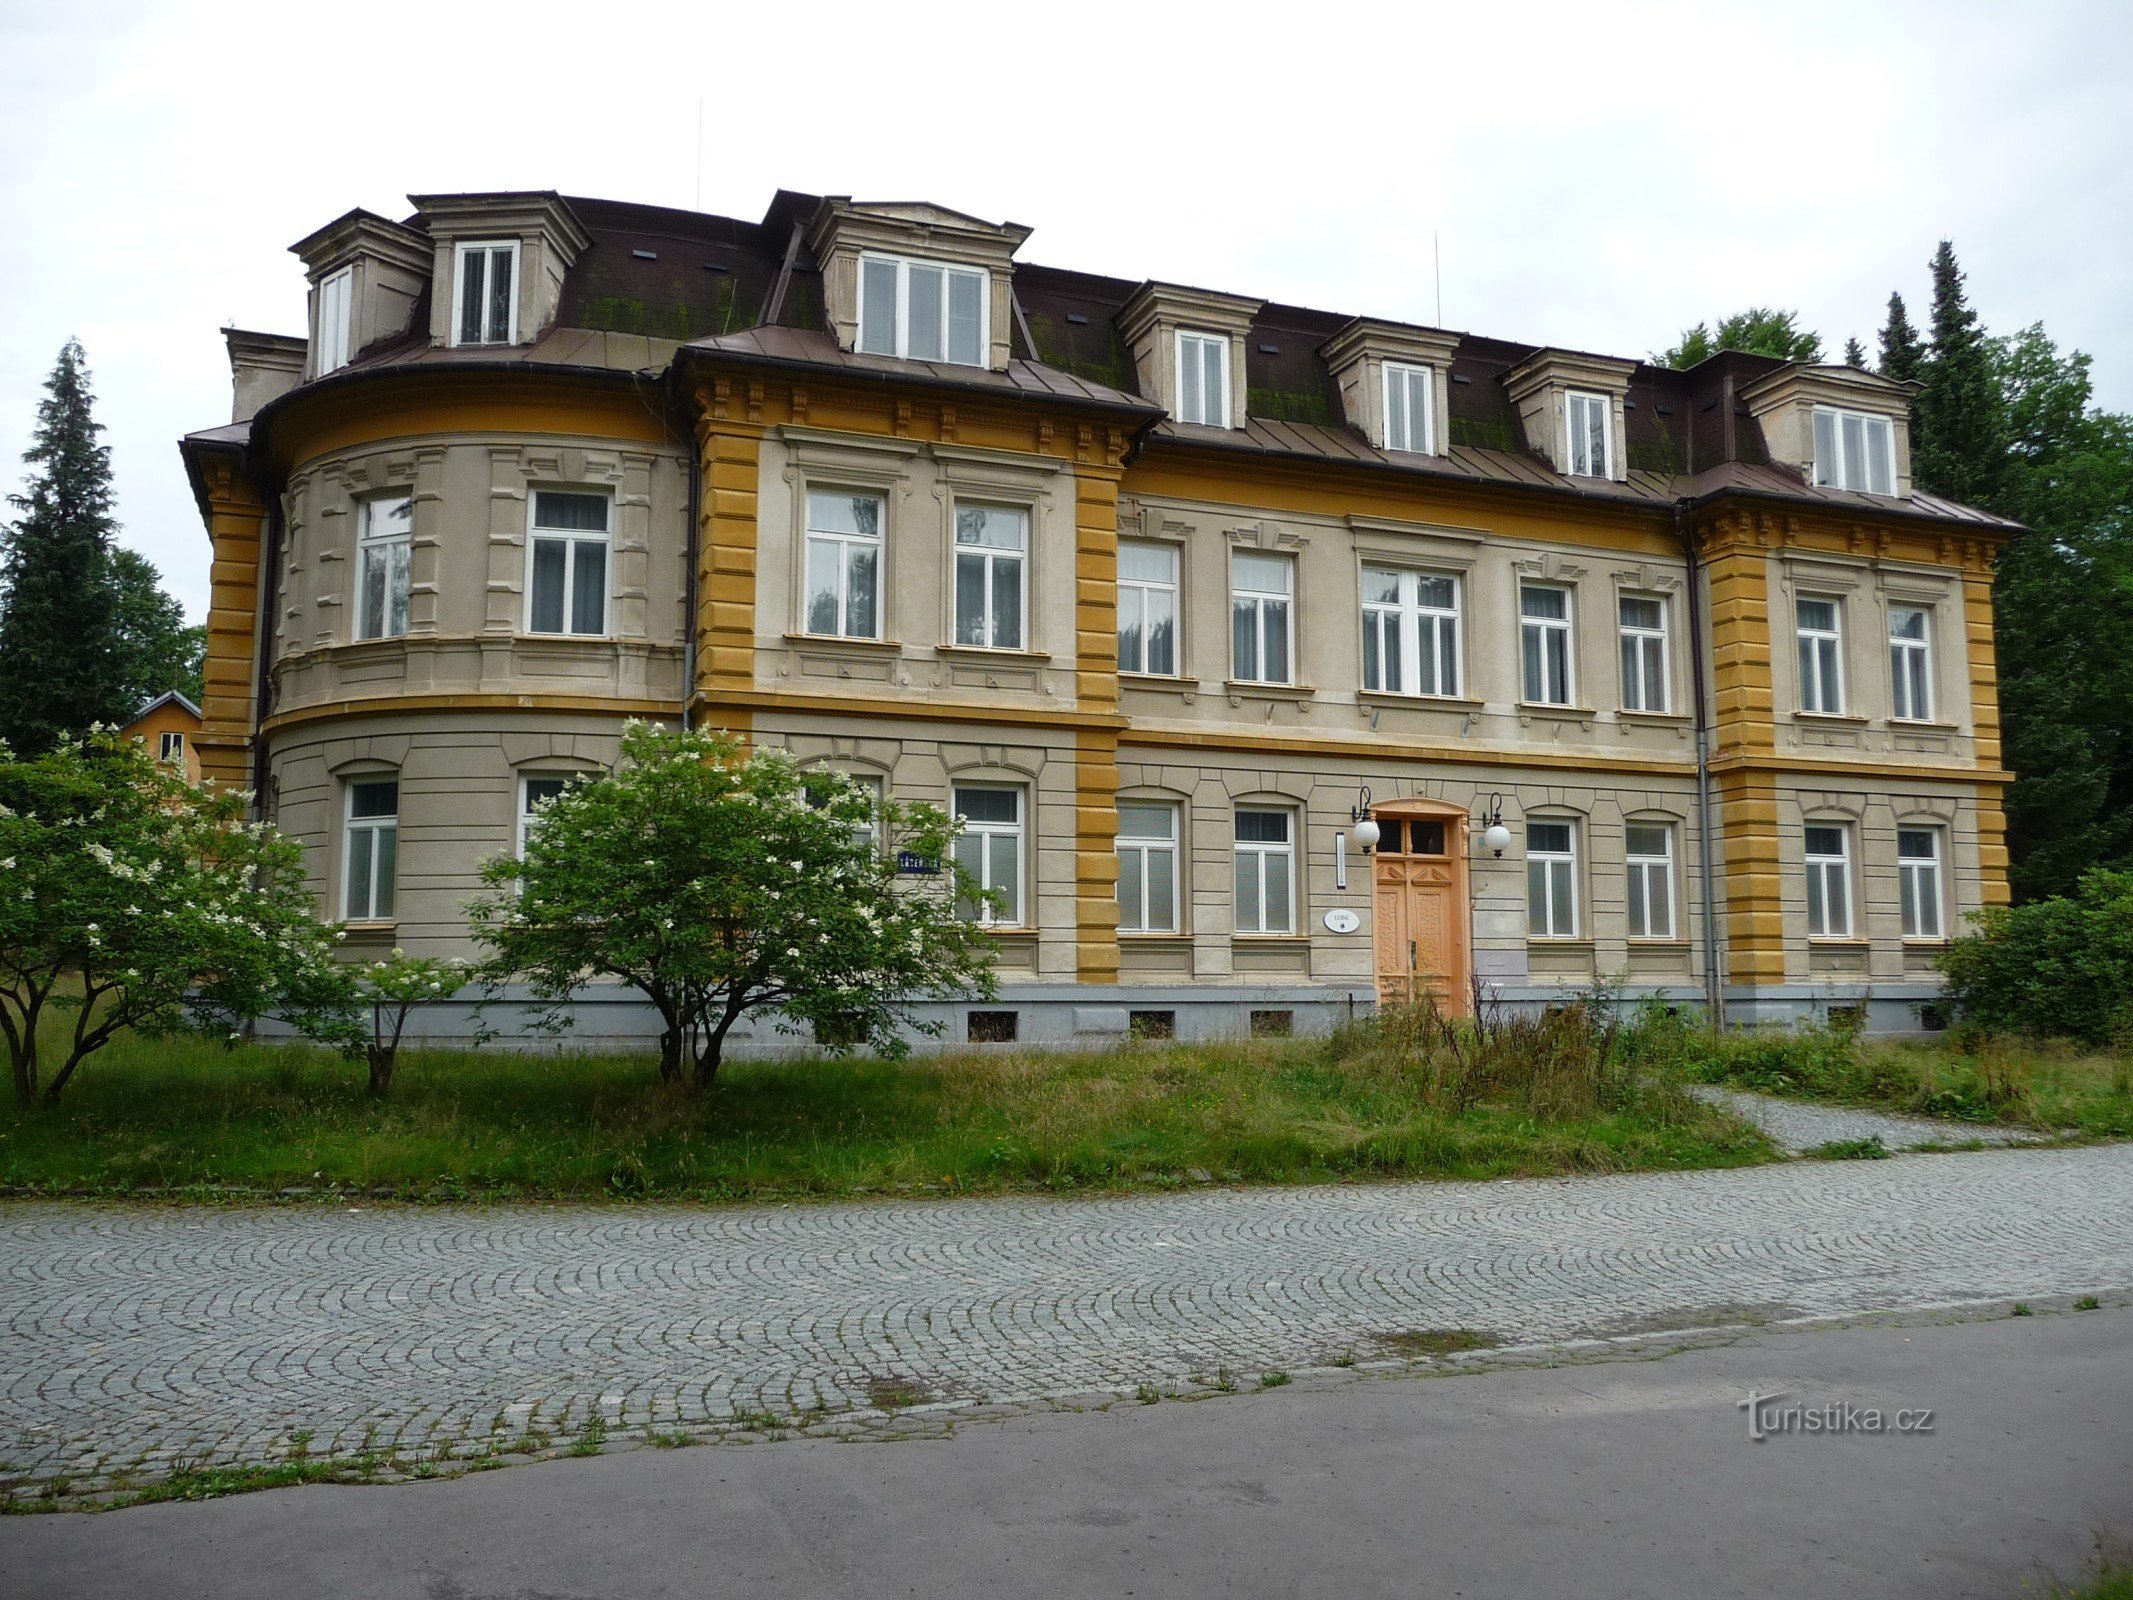 El balneario ya desaparecido en Lipová Lázně (y algo sobre su fundador Johann Schroth) añadir 18.4.16